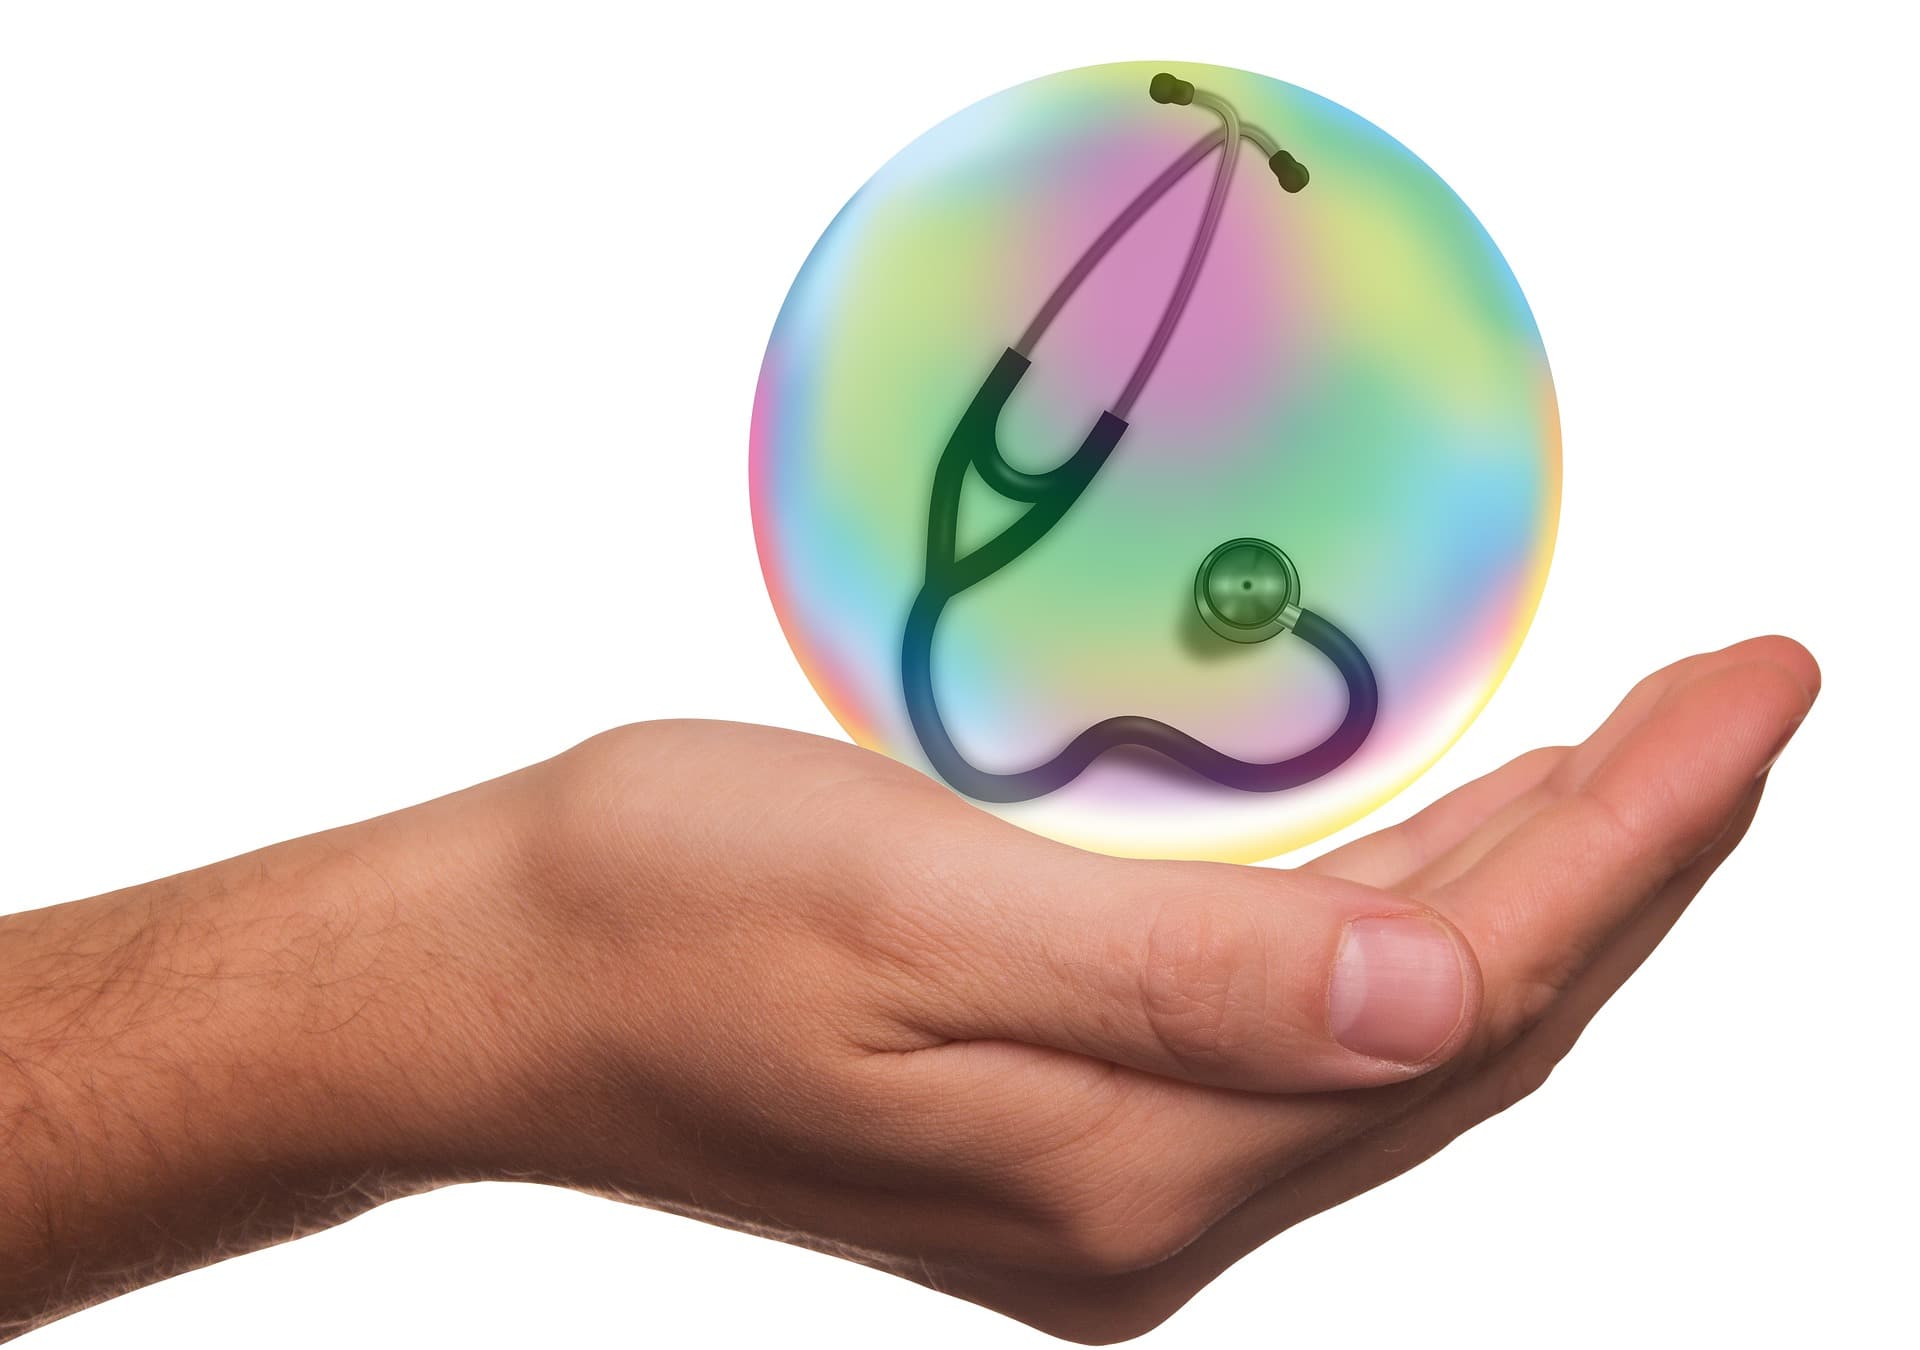 Une main présentant une image numérique colorée et translucide d'une aubergine et d'une goutte d'eau, invitant à commenter choisir pour s'assurer de la pertinence de la mutuelle santé.